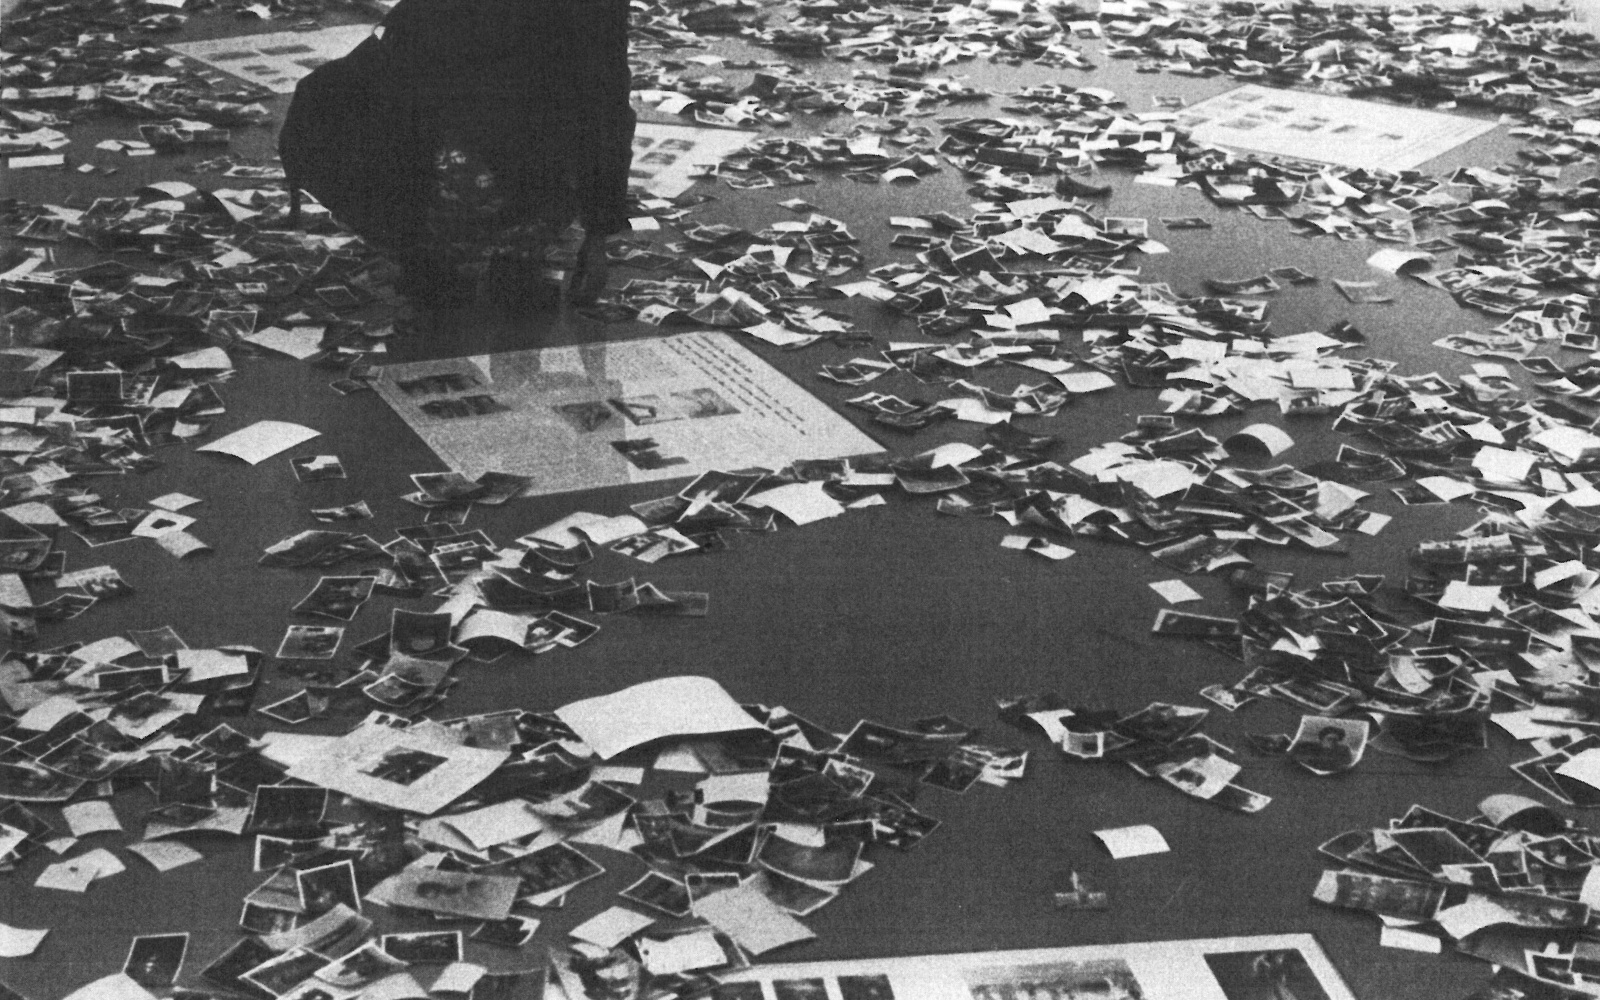 Die Schwarzweiß-Fotografie zeigt viele auf dem Boden zerstreute Fotos.